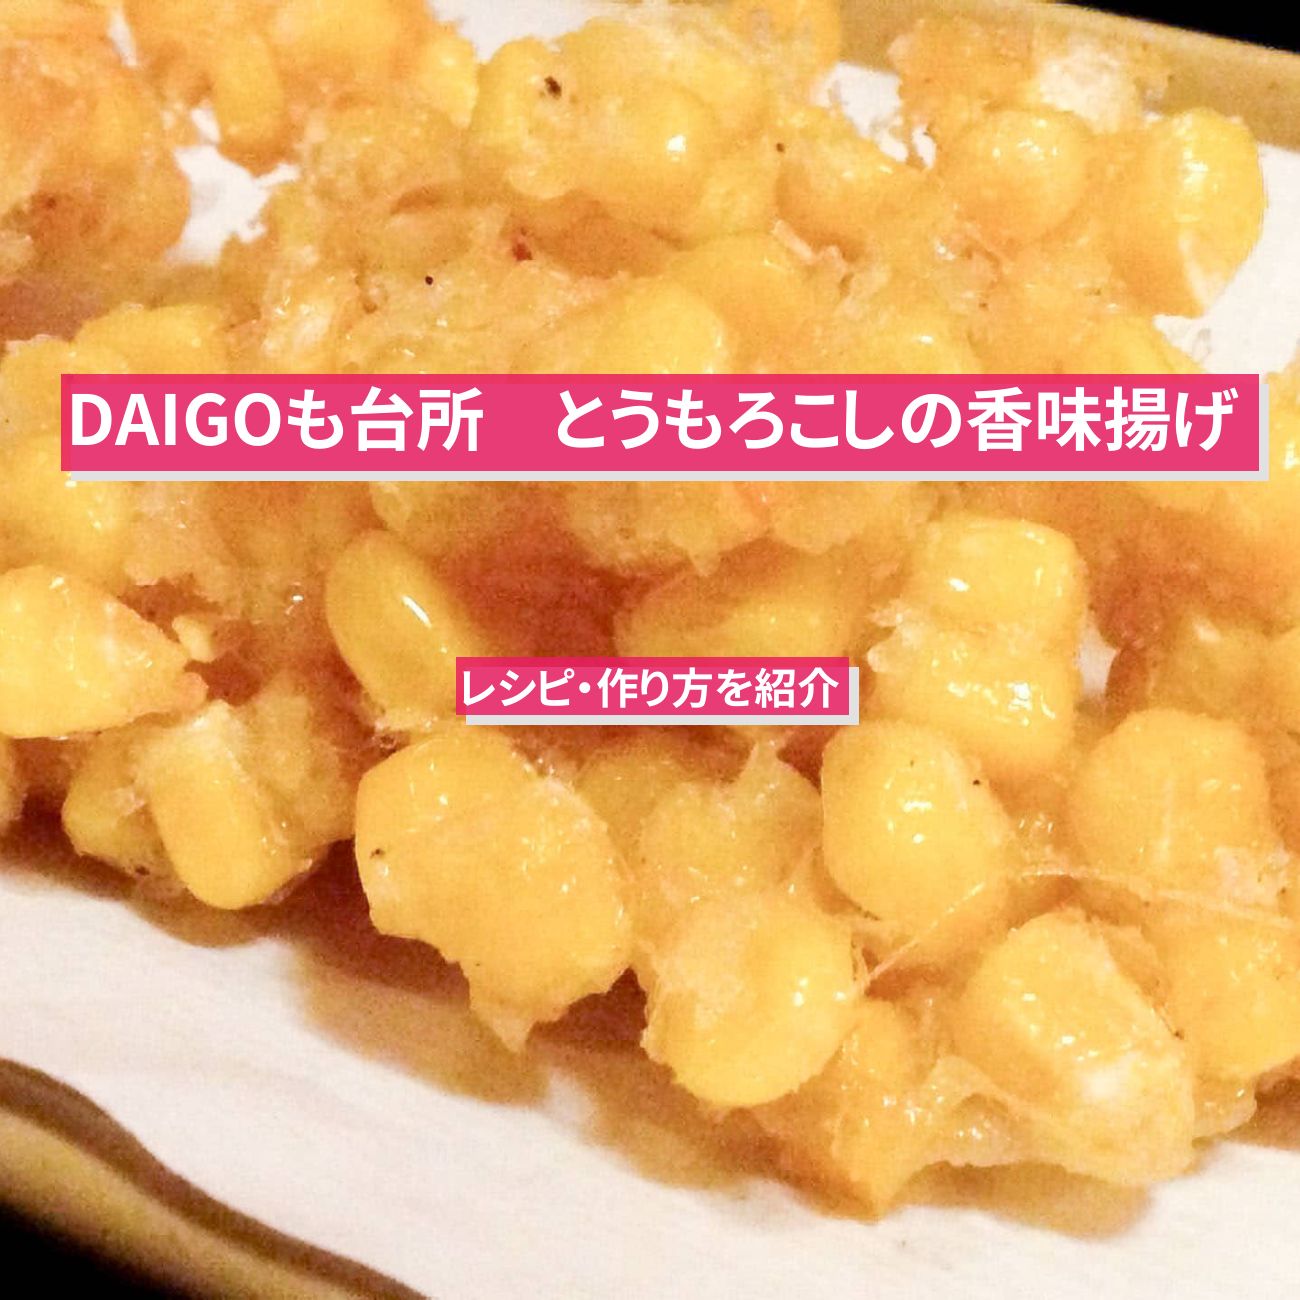 【DAIGOも台所】『とうもろこしの香味揚げ』のレシピ・作り方を紹介〔ダイゴも台所〕